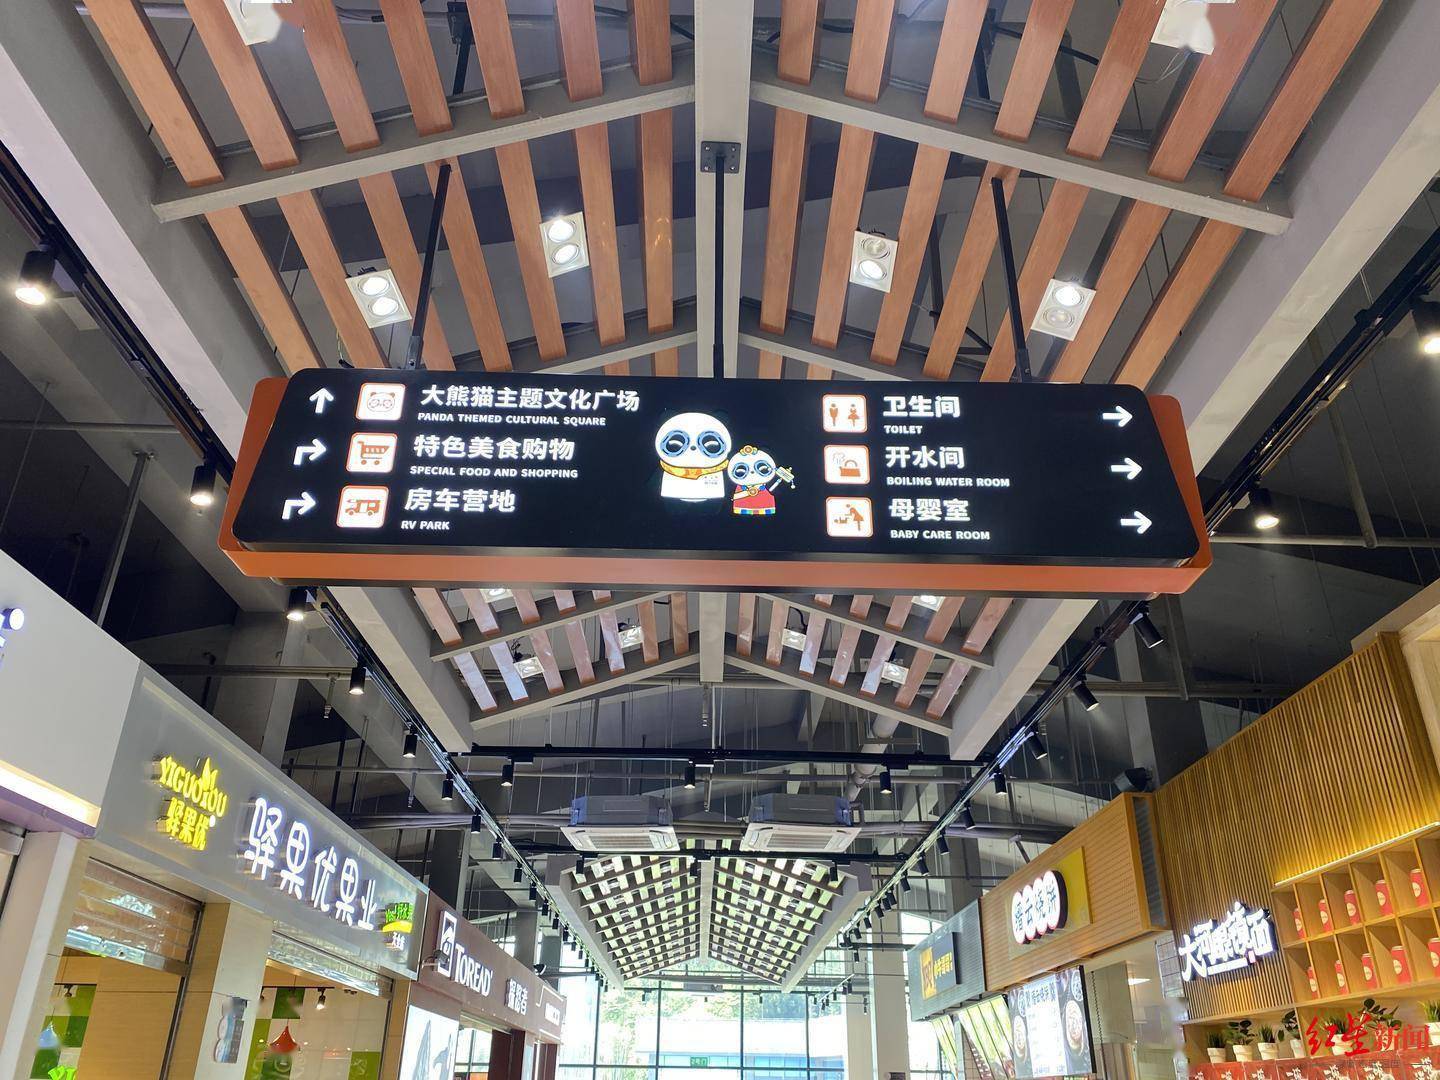 游客服务中心指示牌图片